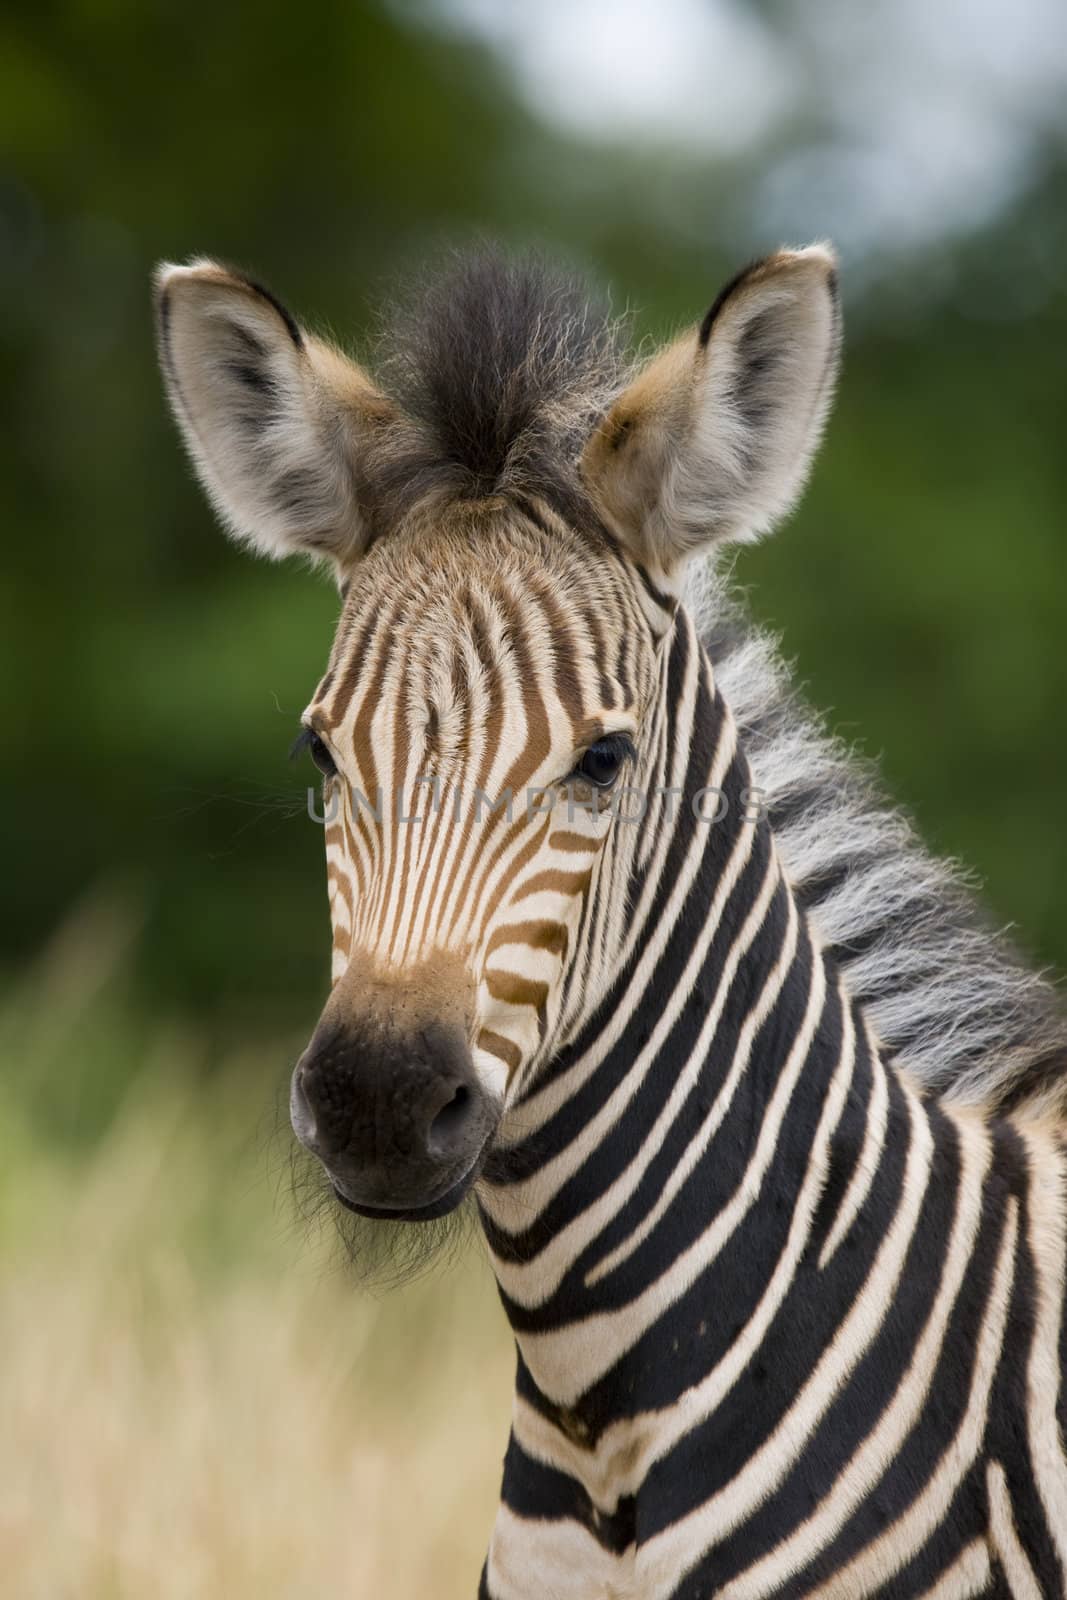 Young Zebra by nightowlza